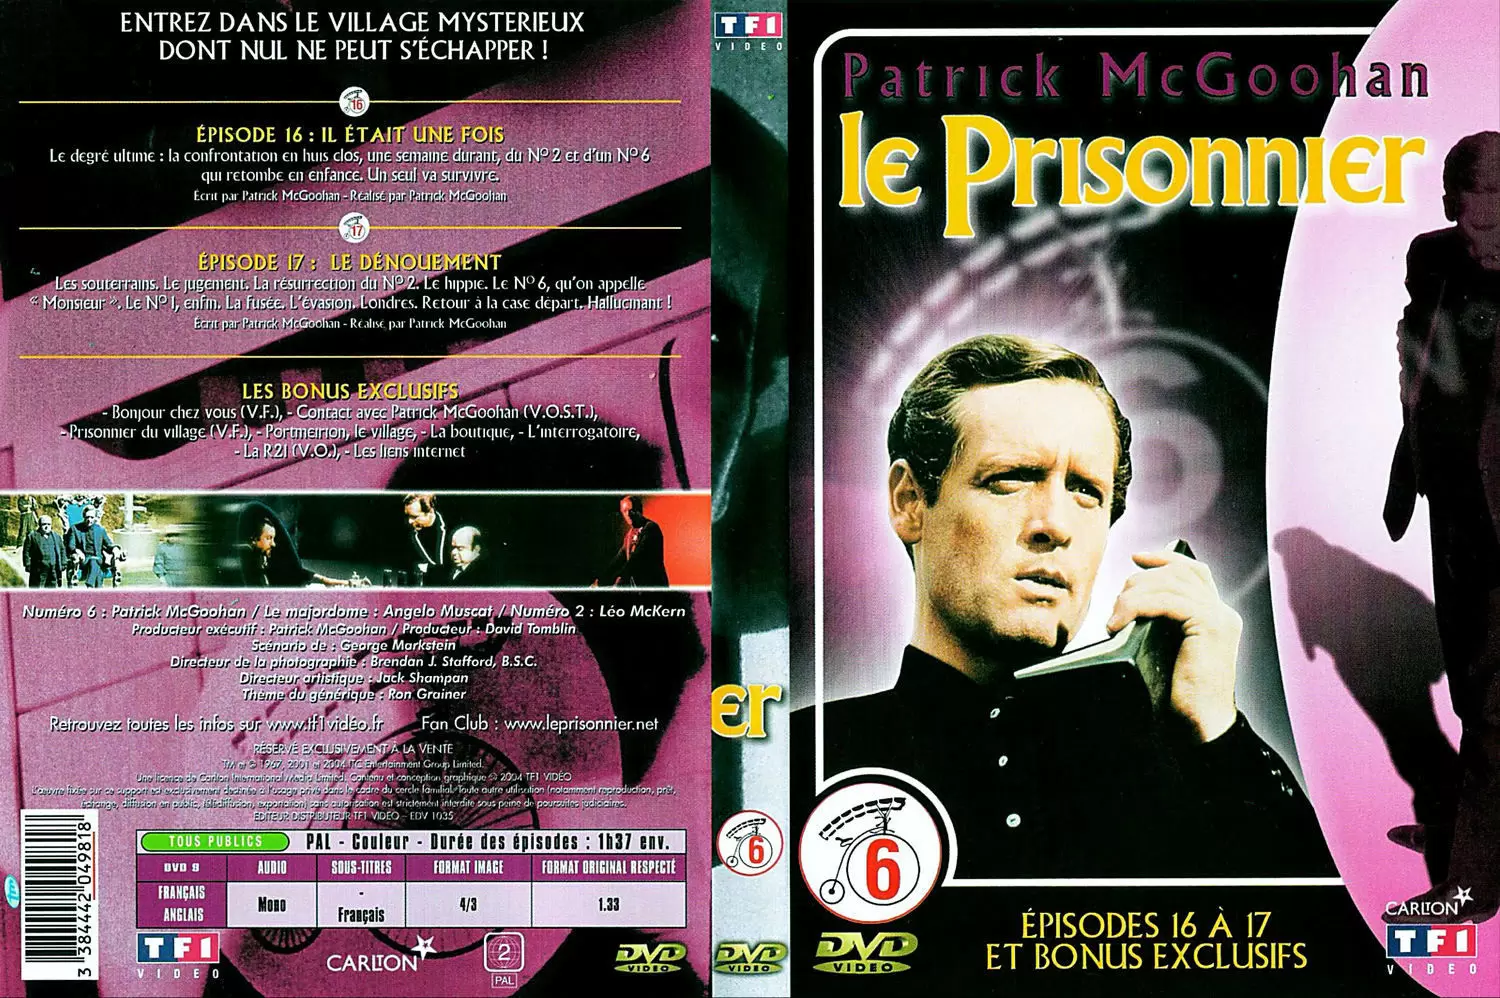 Le Prisonnier - Le Prisonnier: Vol. 6 Épisodes 16 à 17 et Bonus